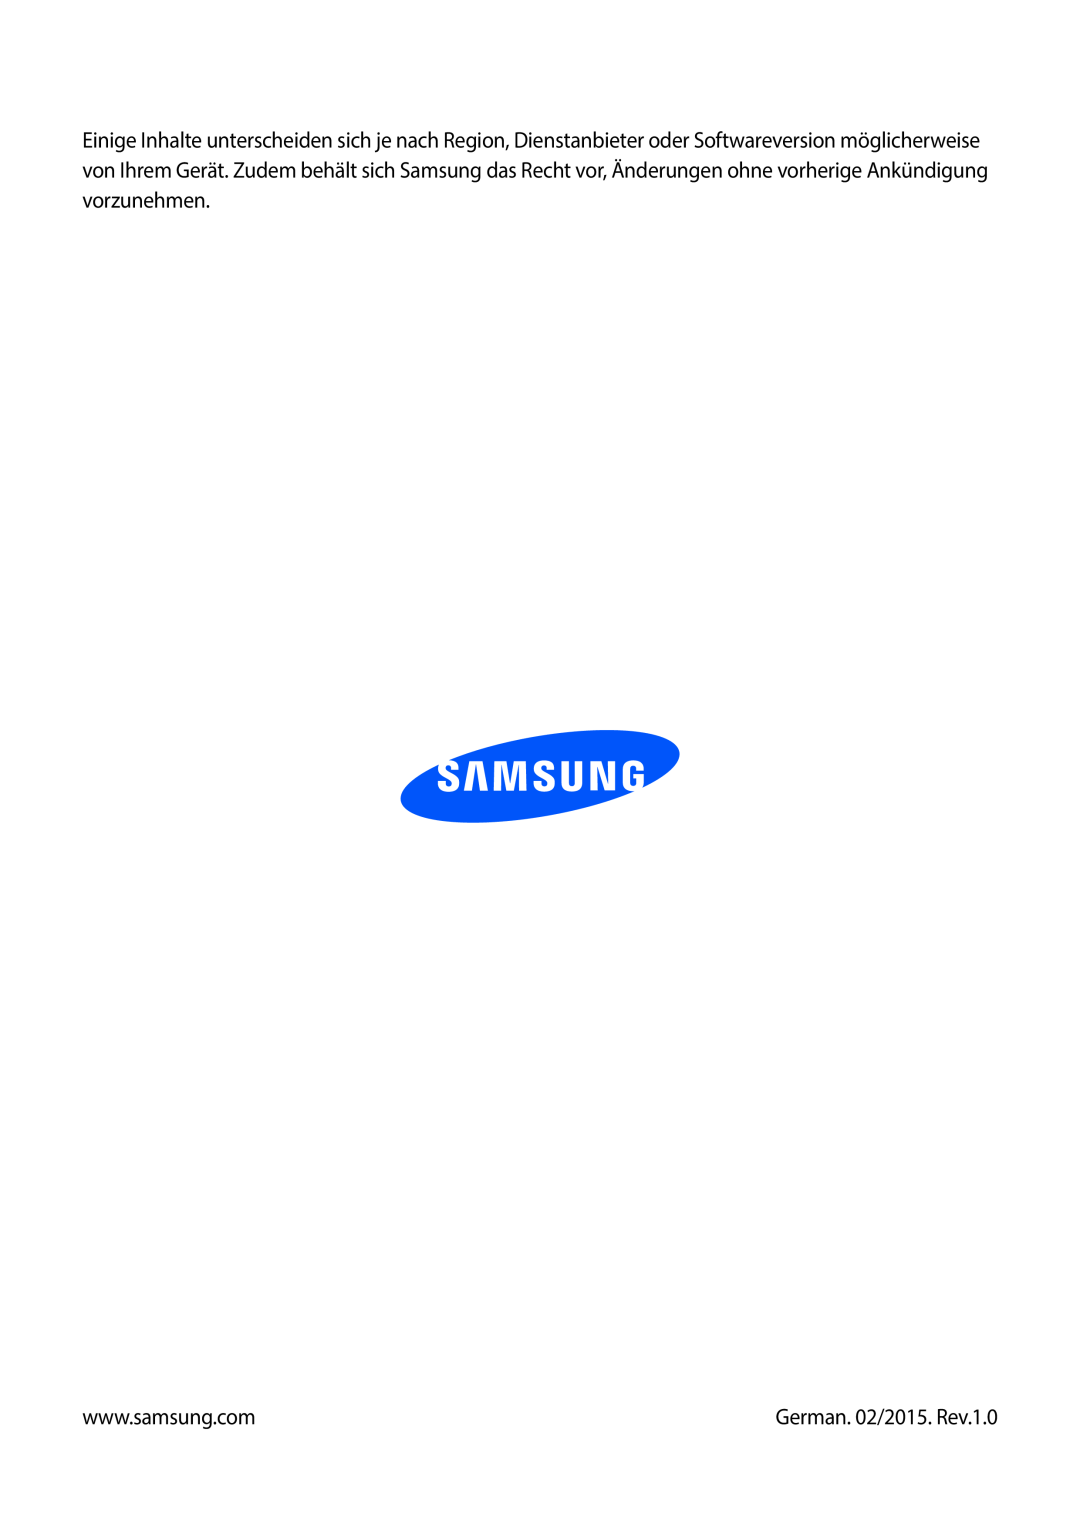 Samsung SM-N9005ZKEPRT, SM-N9005ZKEXEO, SM-N9005ZWEVD2, SM-N9005ZWETMN, SM-N9005ZWETCL manual German. 02/2015. Rev.1.0 